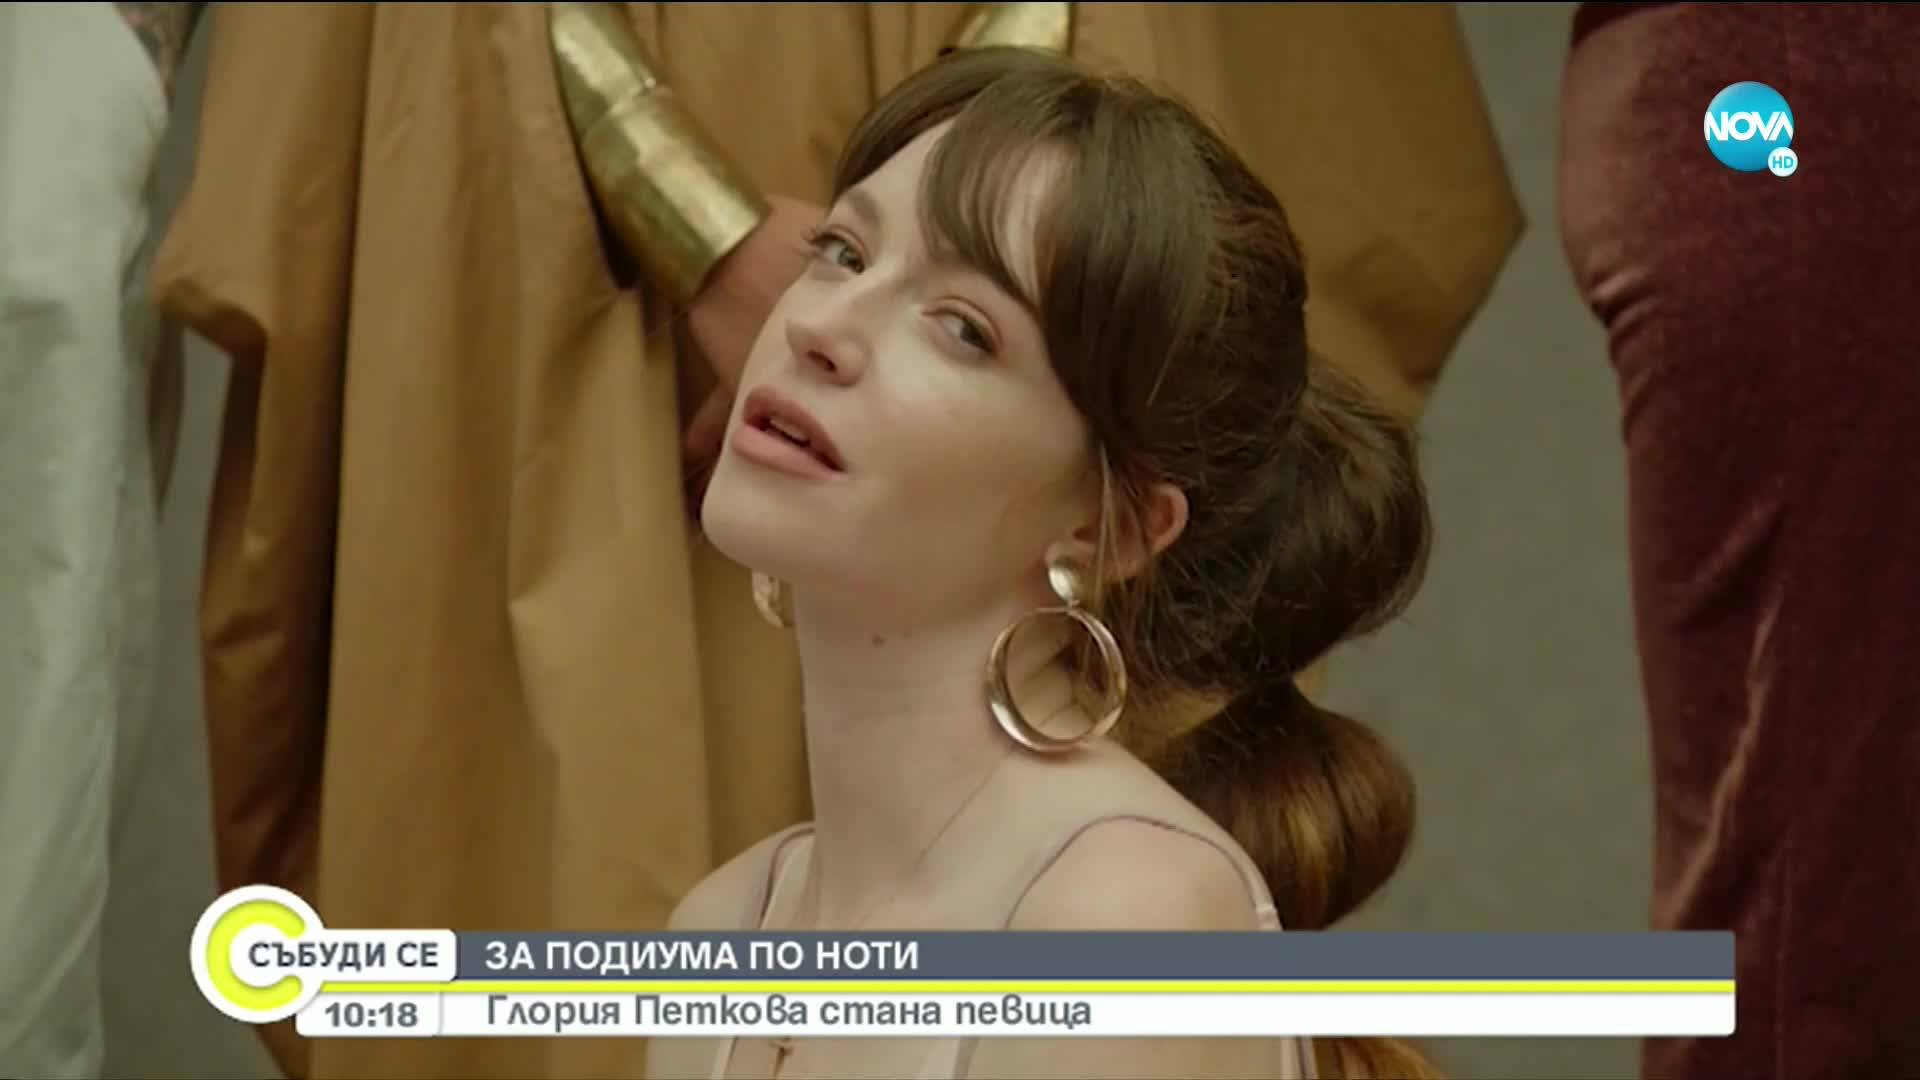 Глория Петкова стана певица